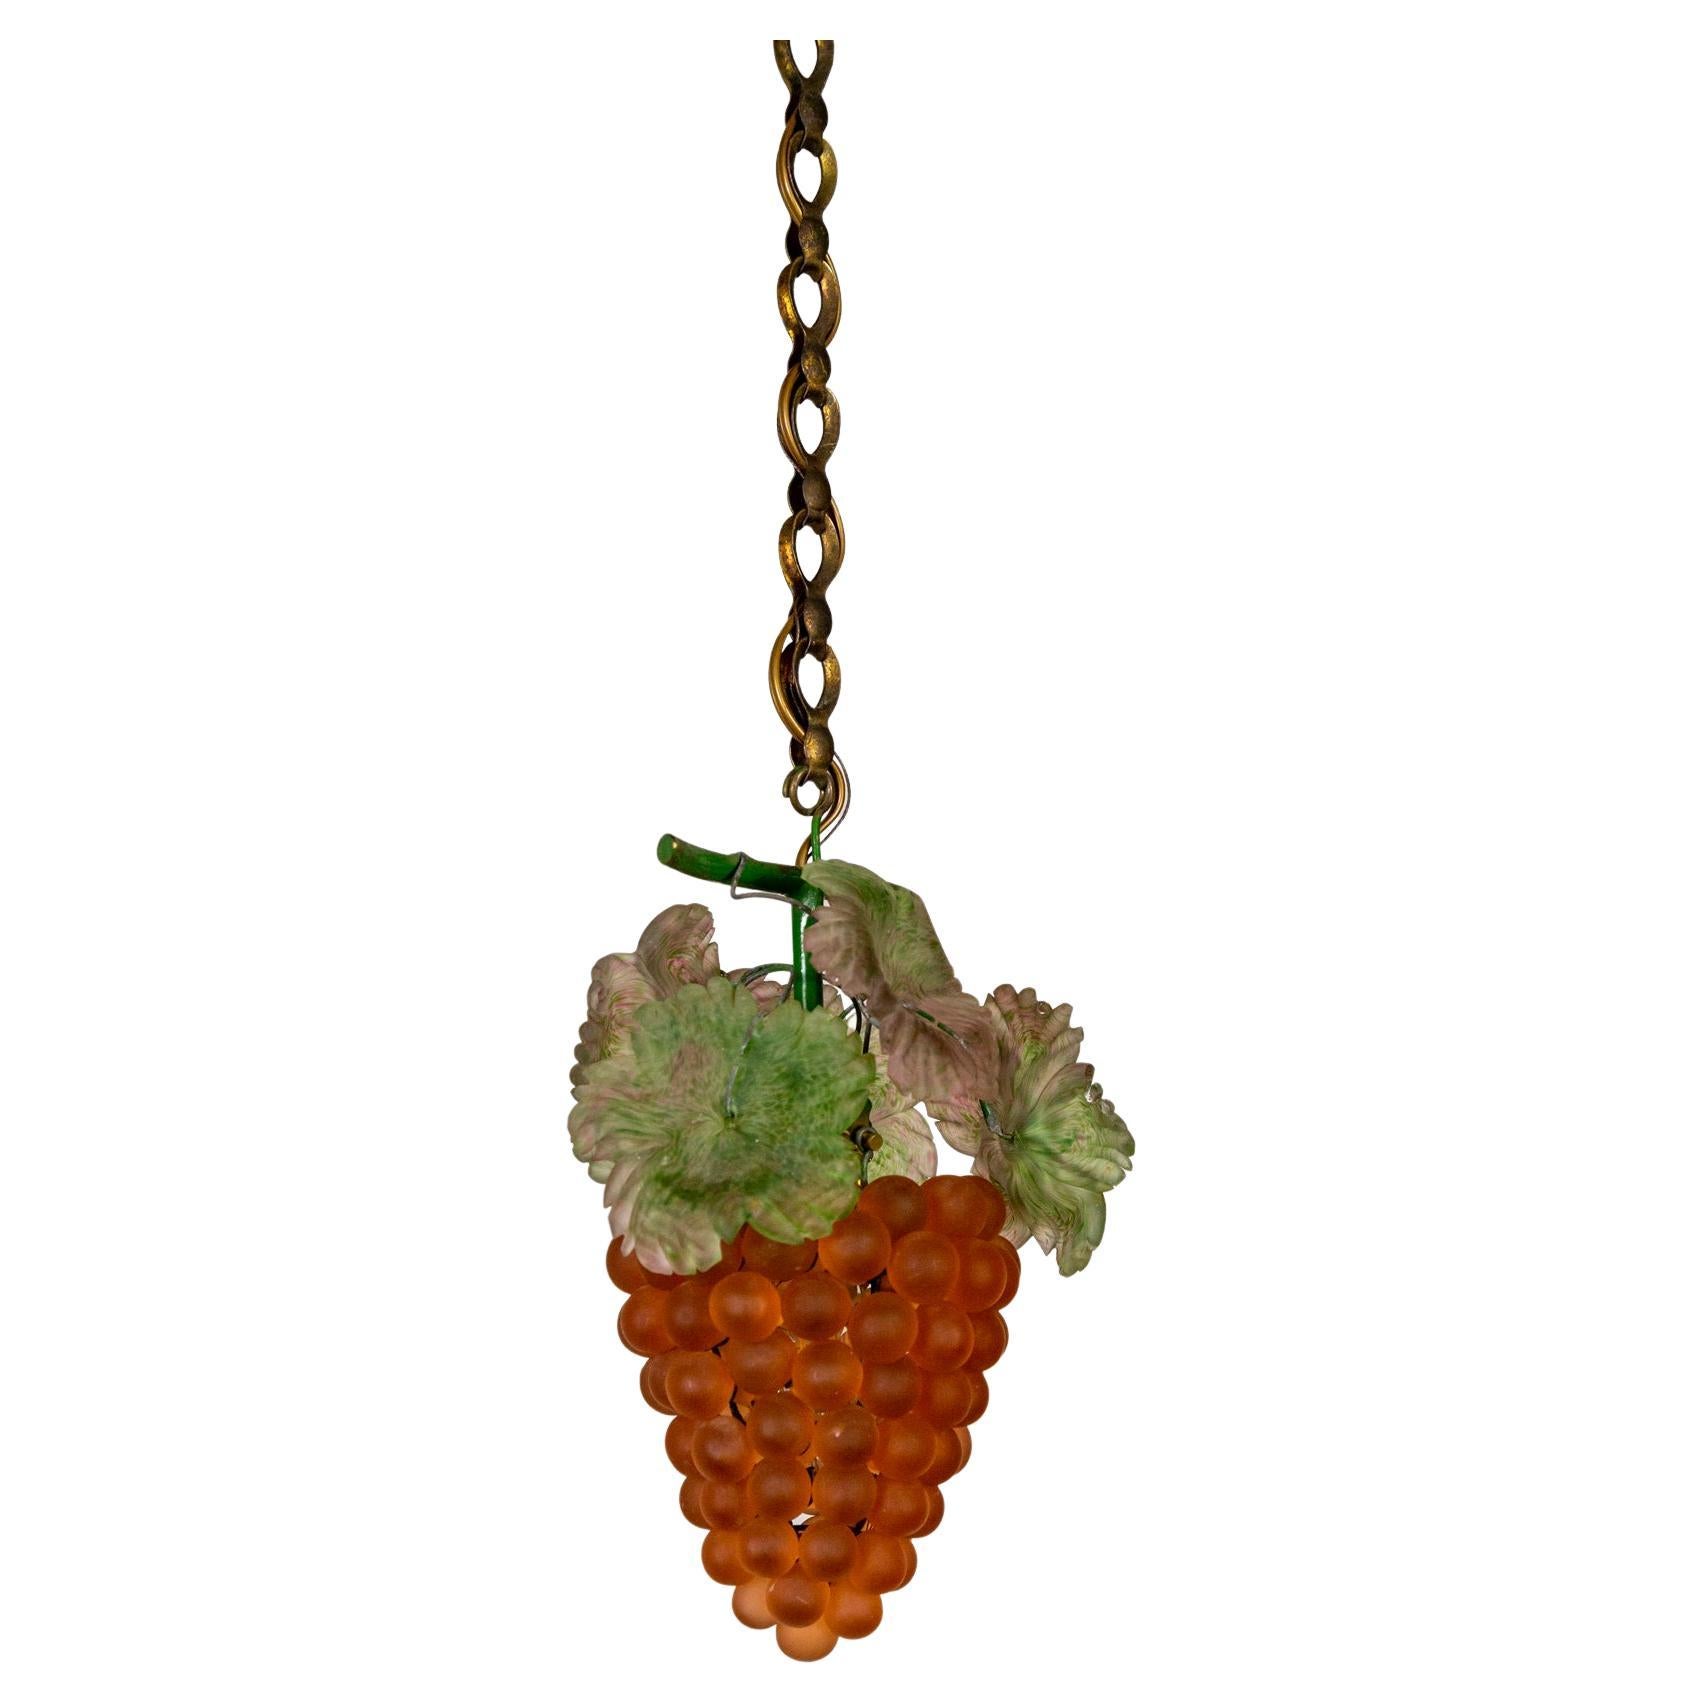 Une lampe suspendue vibrante des années 1920 ; des grappes de raisin en verre vénitien de couleur rouge-rouge à ambre avec des feuilles vertes et roses détaillées. Les raisins sont suspendus à une poignée en laiton vert patiné et à une chaîne